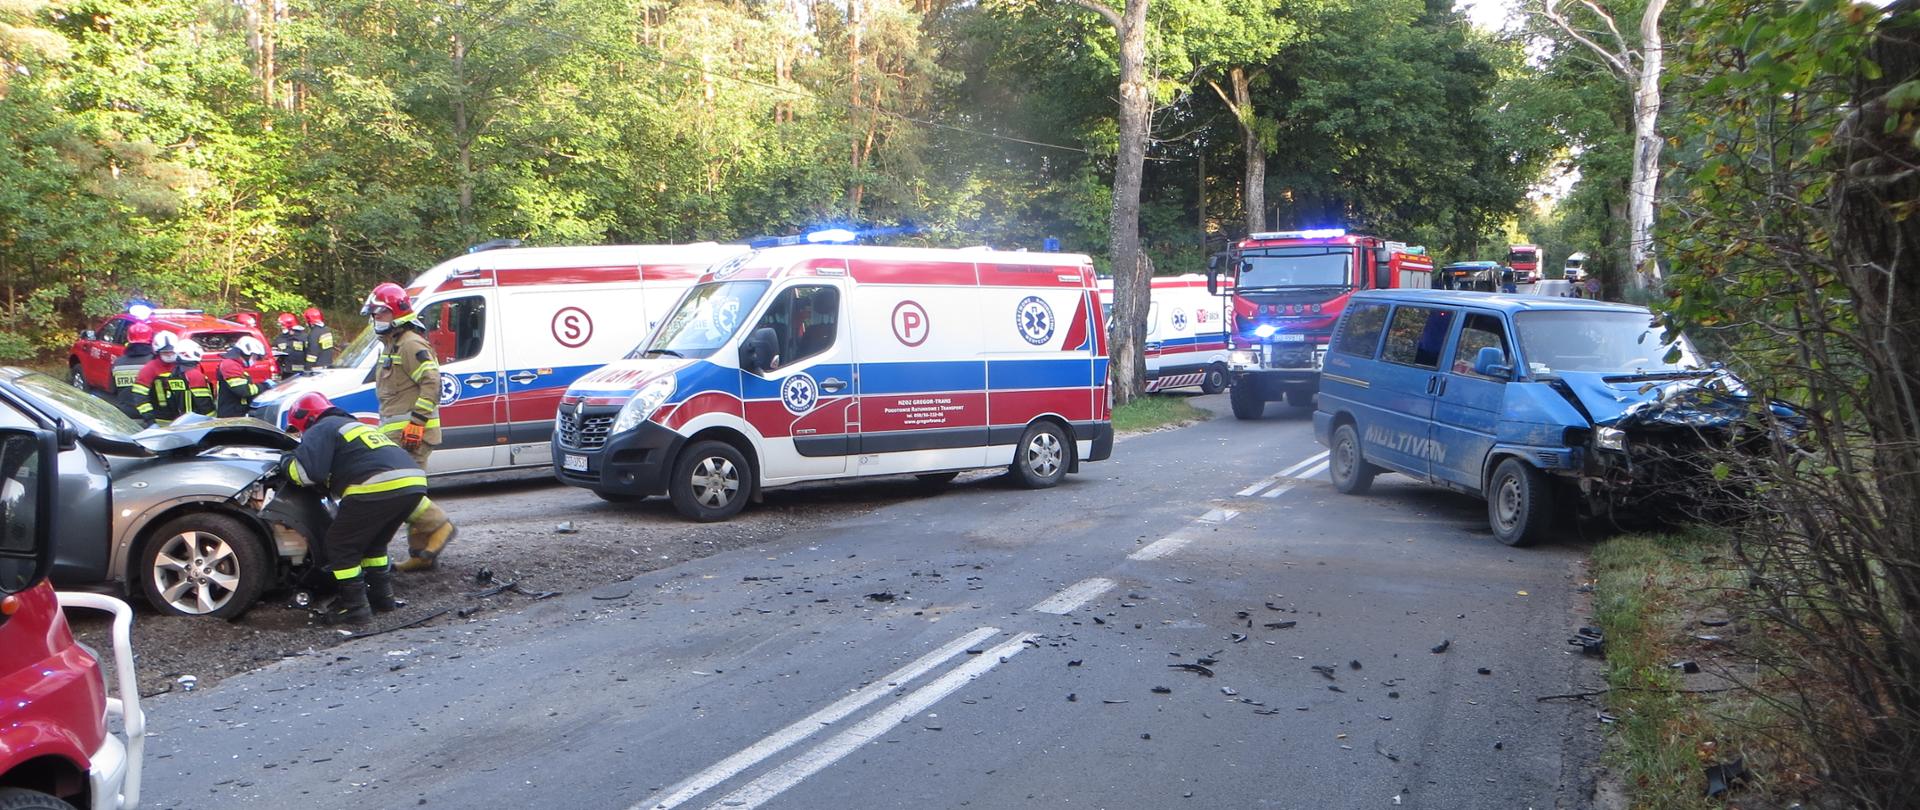 zdjęcie przedstawia miejsce zdarzenia, widać służby ratownicze, pojazdy uczestniczące w kolizji, uszkodzone samochody po kolizji na drodze